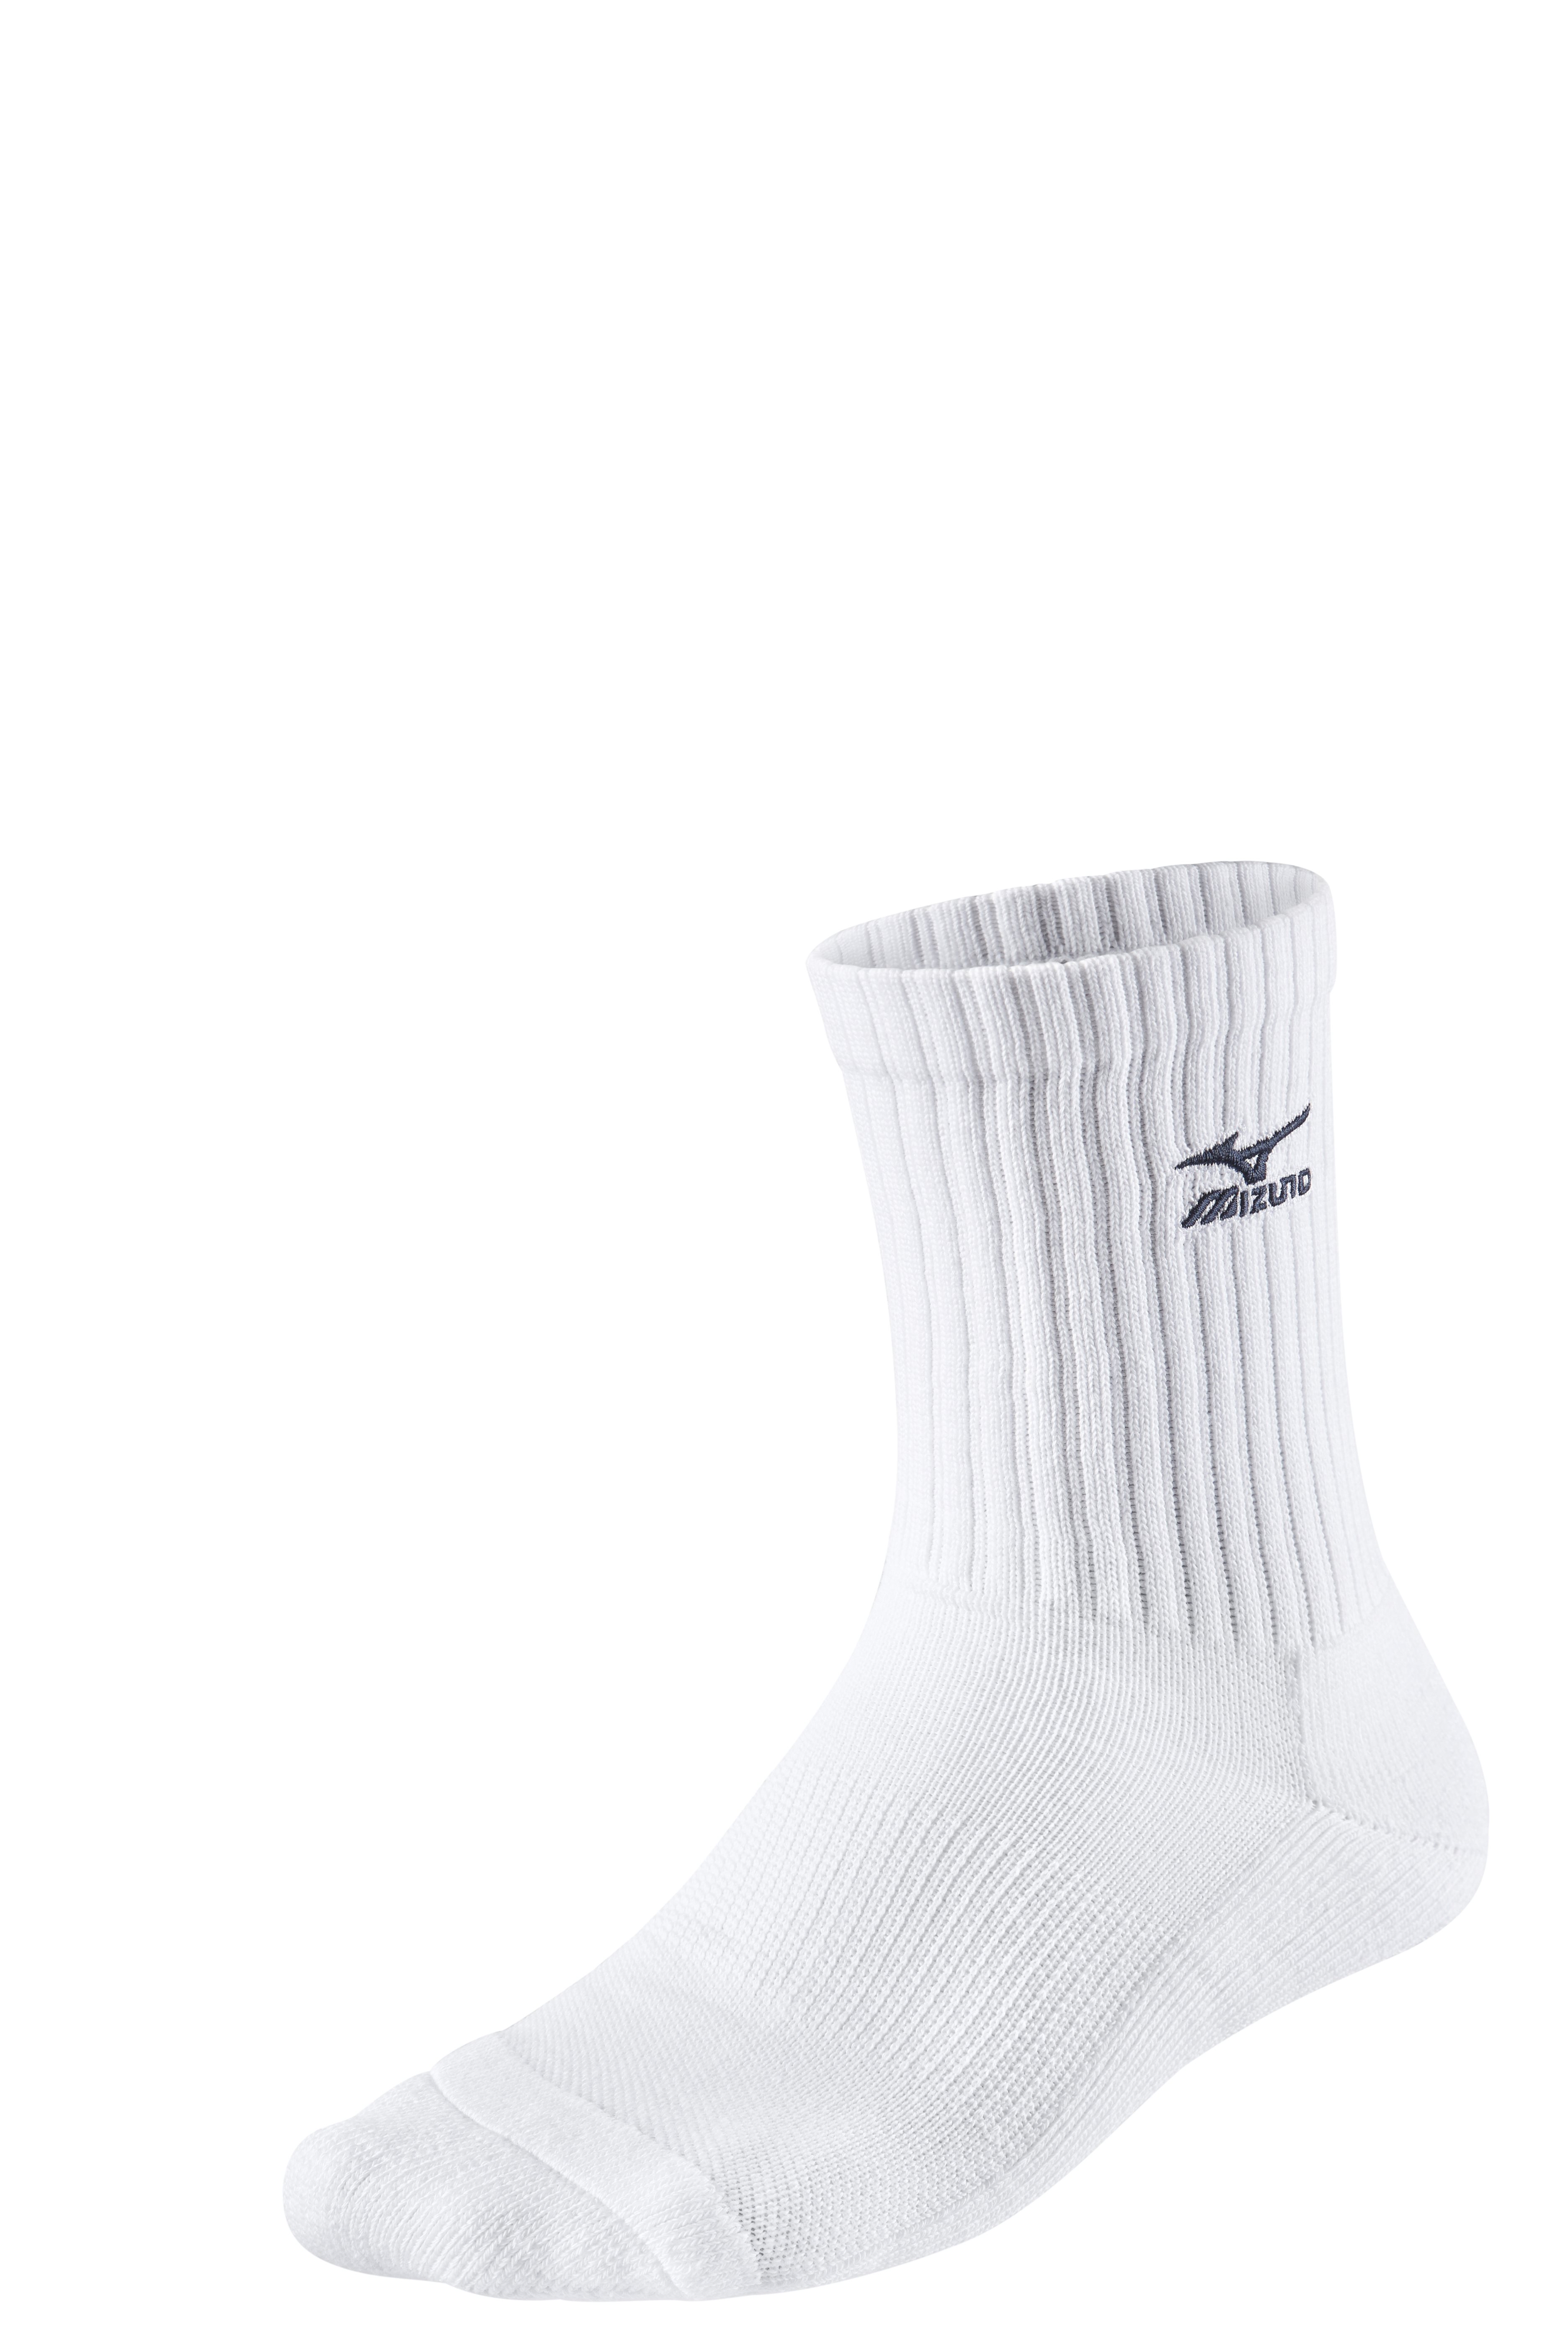 Mizuno Volley Socks Medium 67UU71571 L